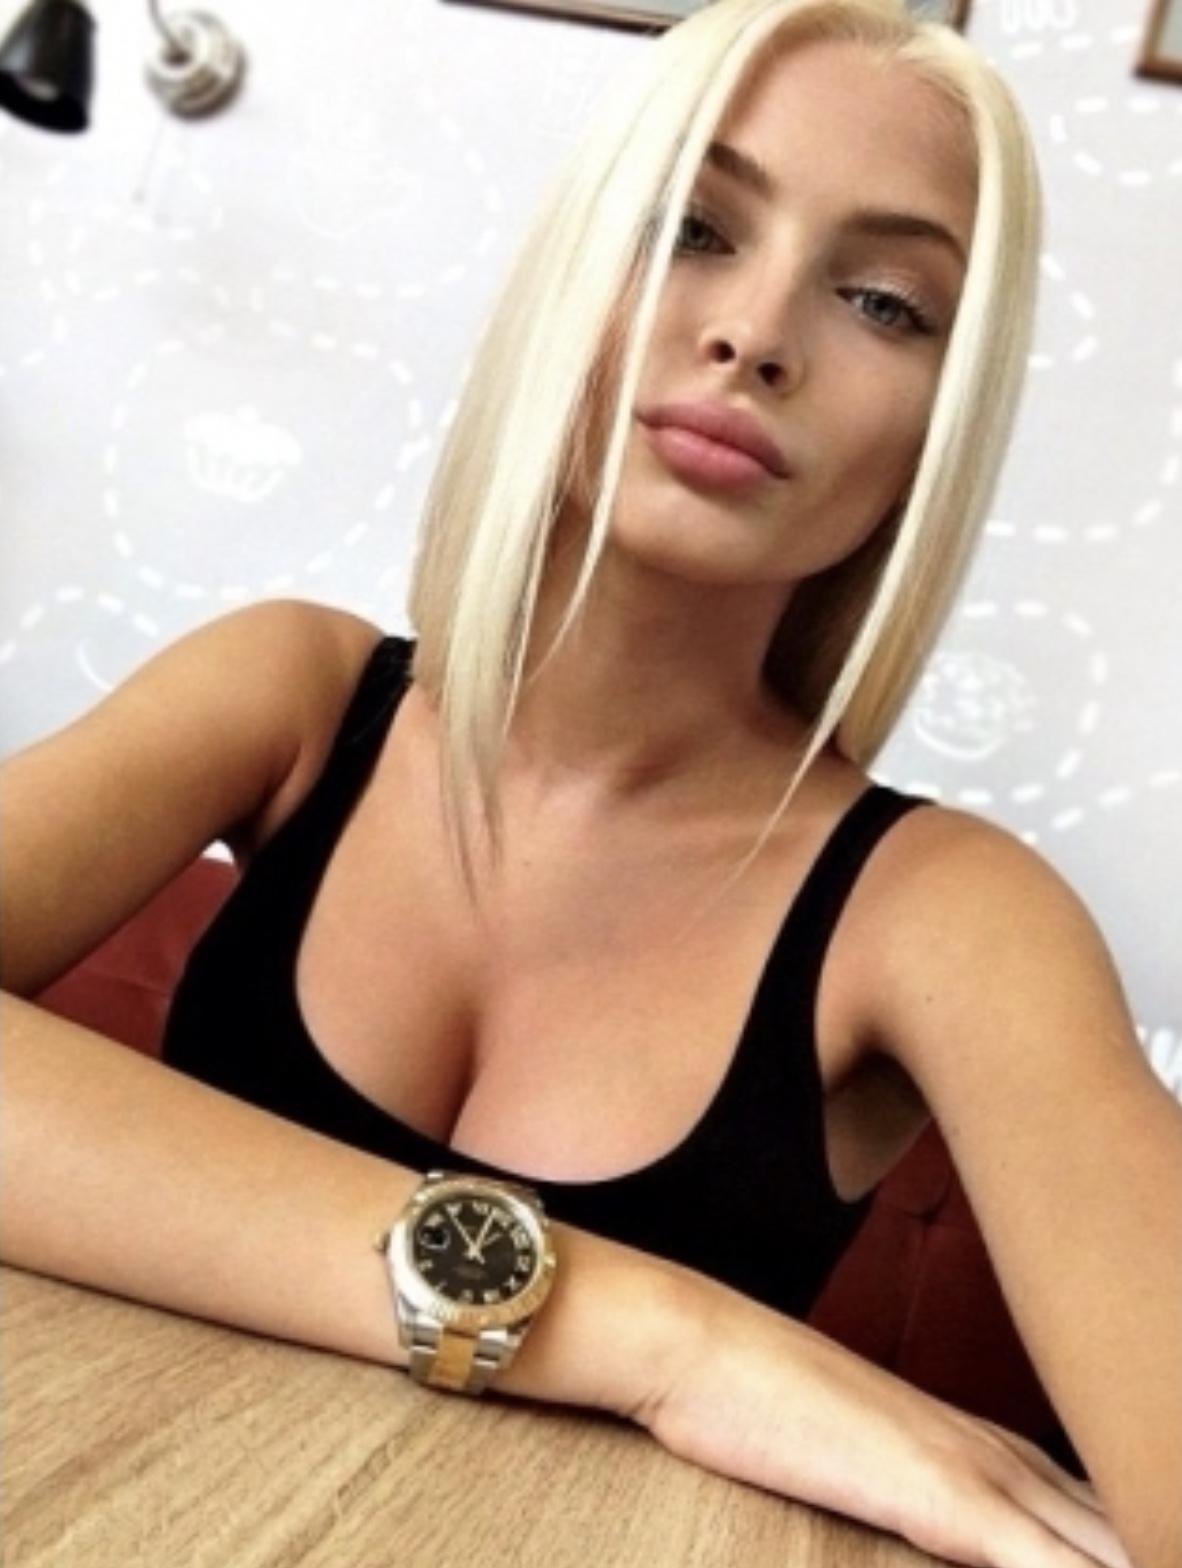 Проститутка Аня, фото 1, тел: 0993668536. В центре города - Киев